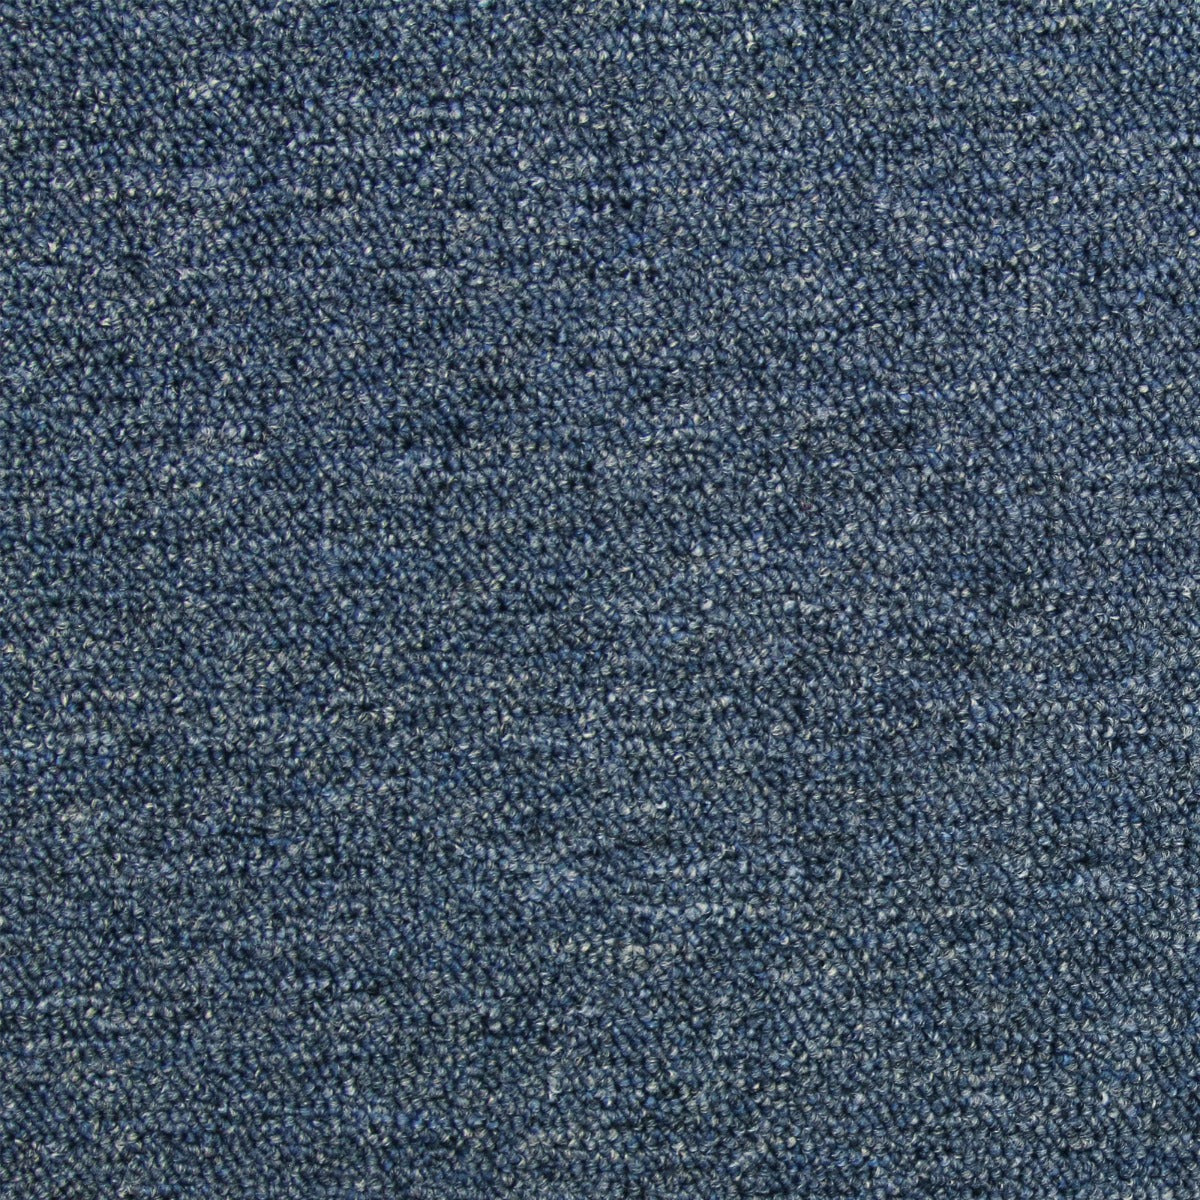 40 x Carpet Tiles 10m2 / Storm Blue & Charcoal Black